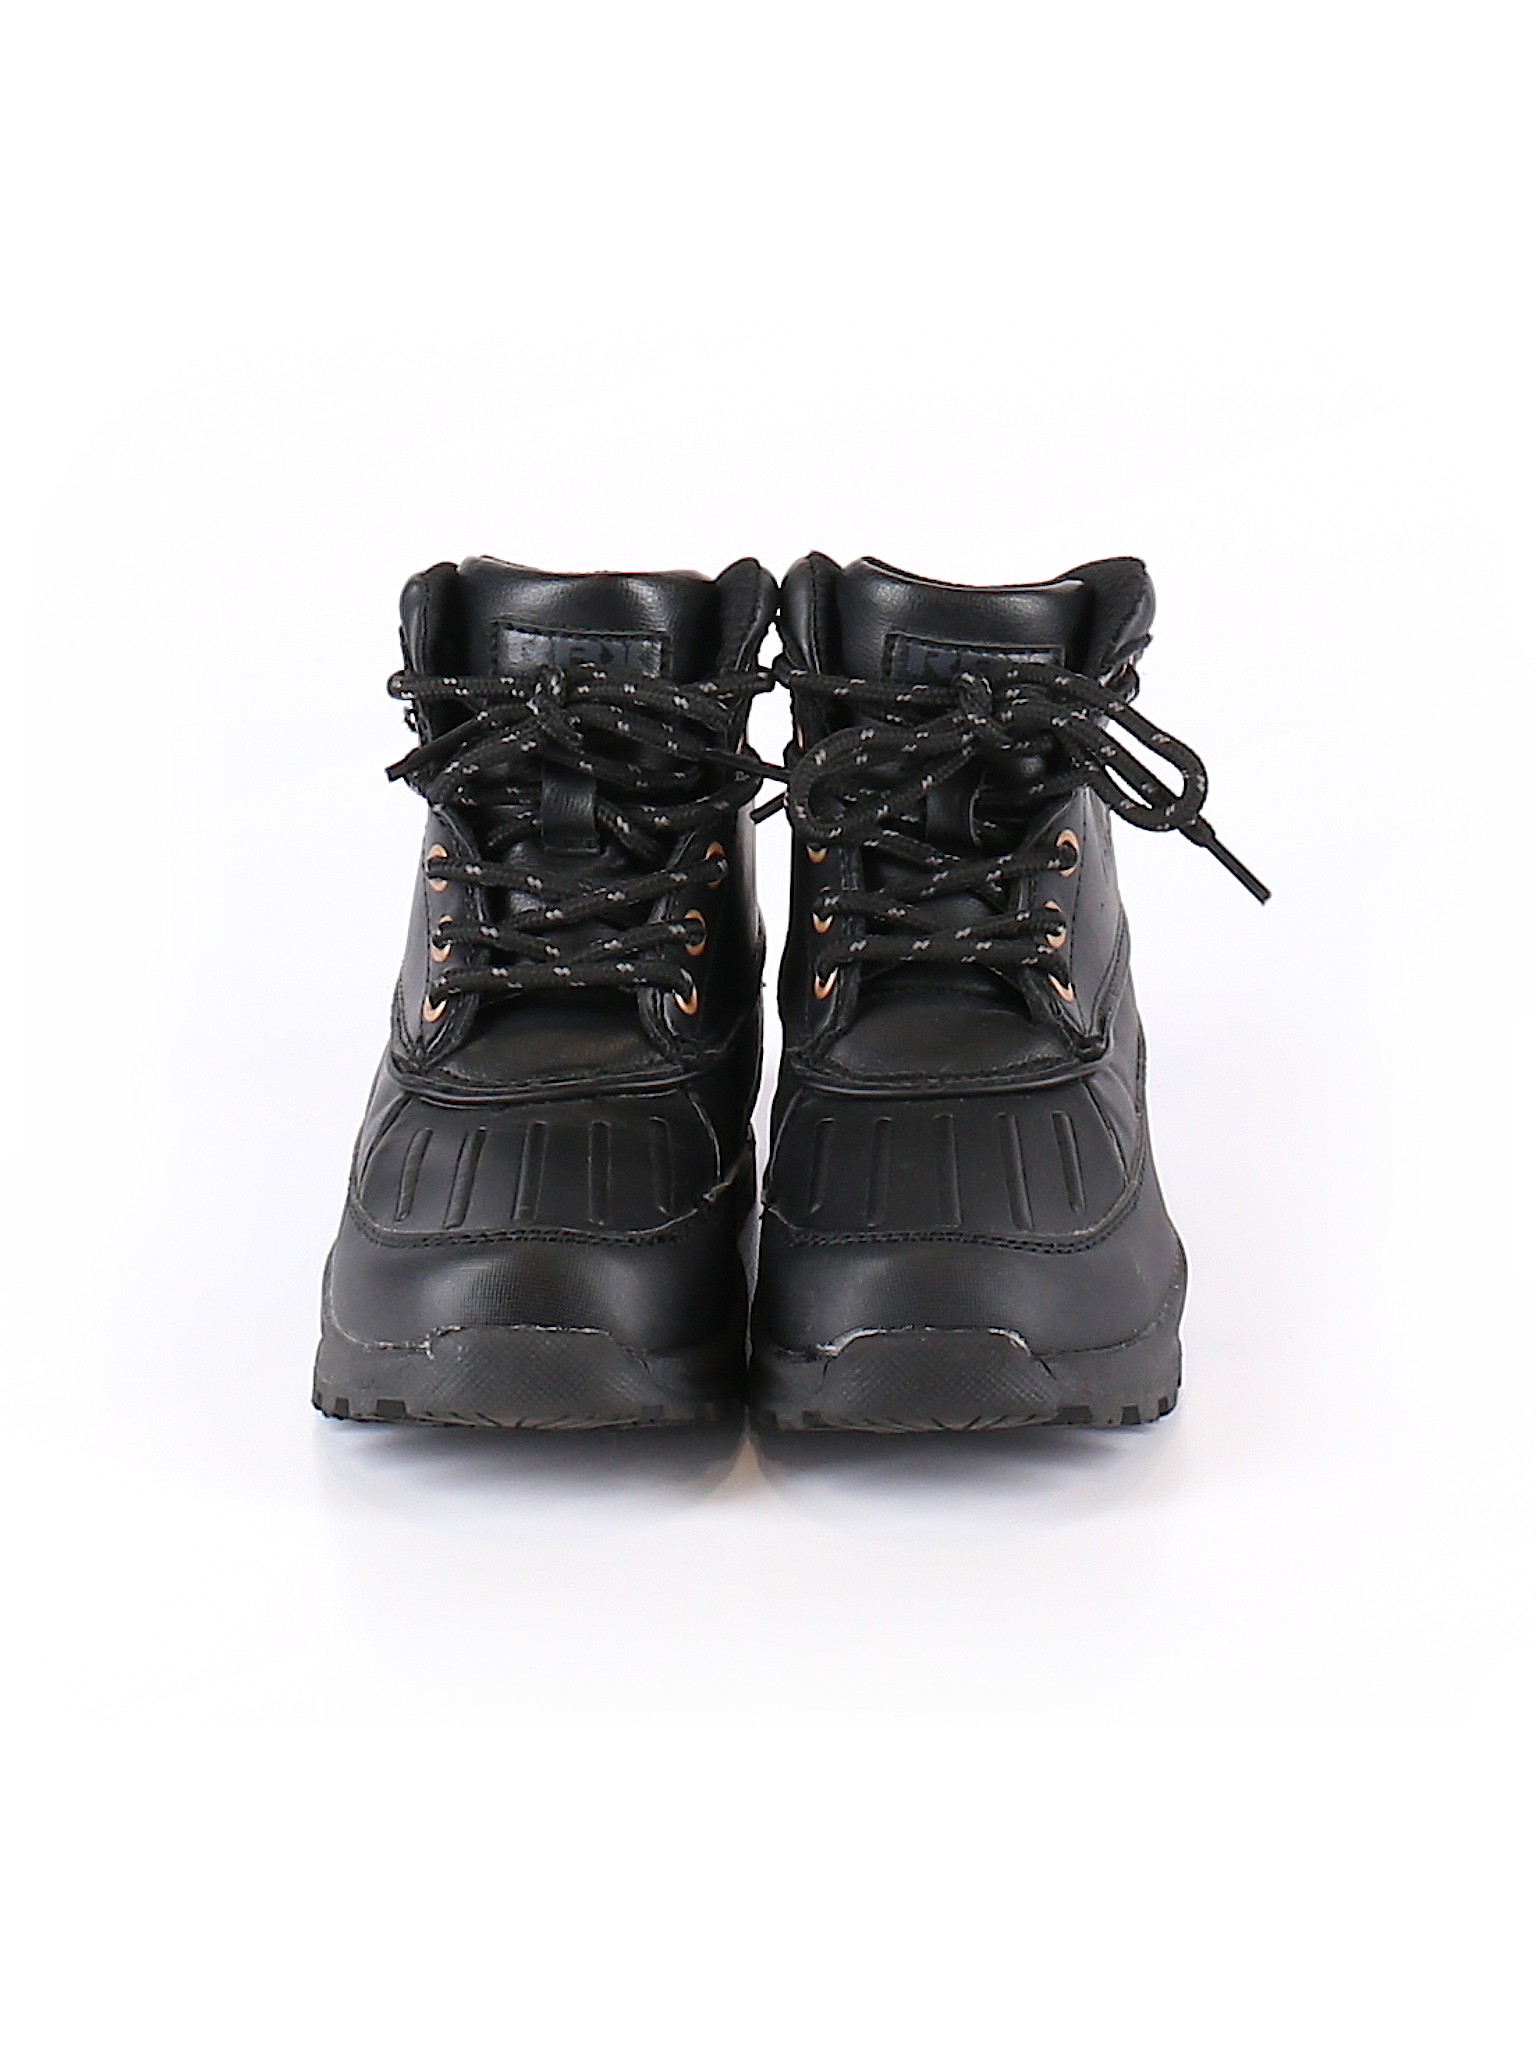 Rbx Solid Black Boots Size 11 1 2 69 Off Thredup - rbx boots com roblox